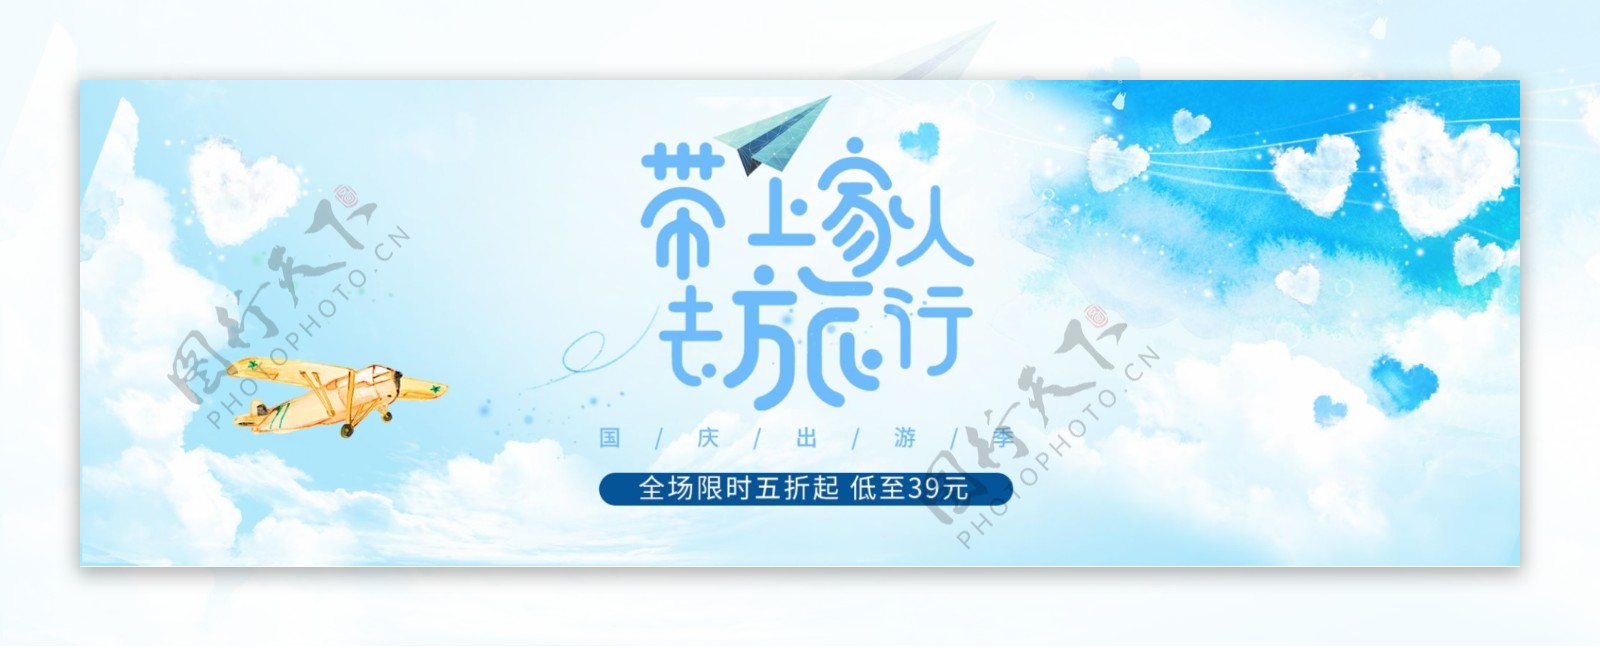 带上家人去旅行国庆出游季淘宝天猫电商海报banner